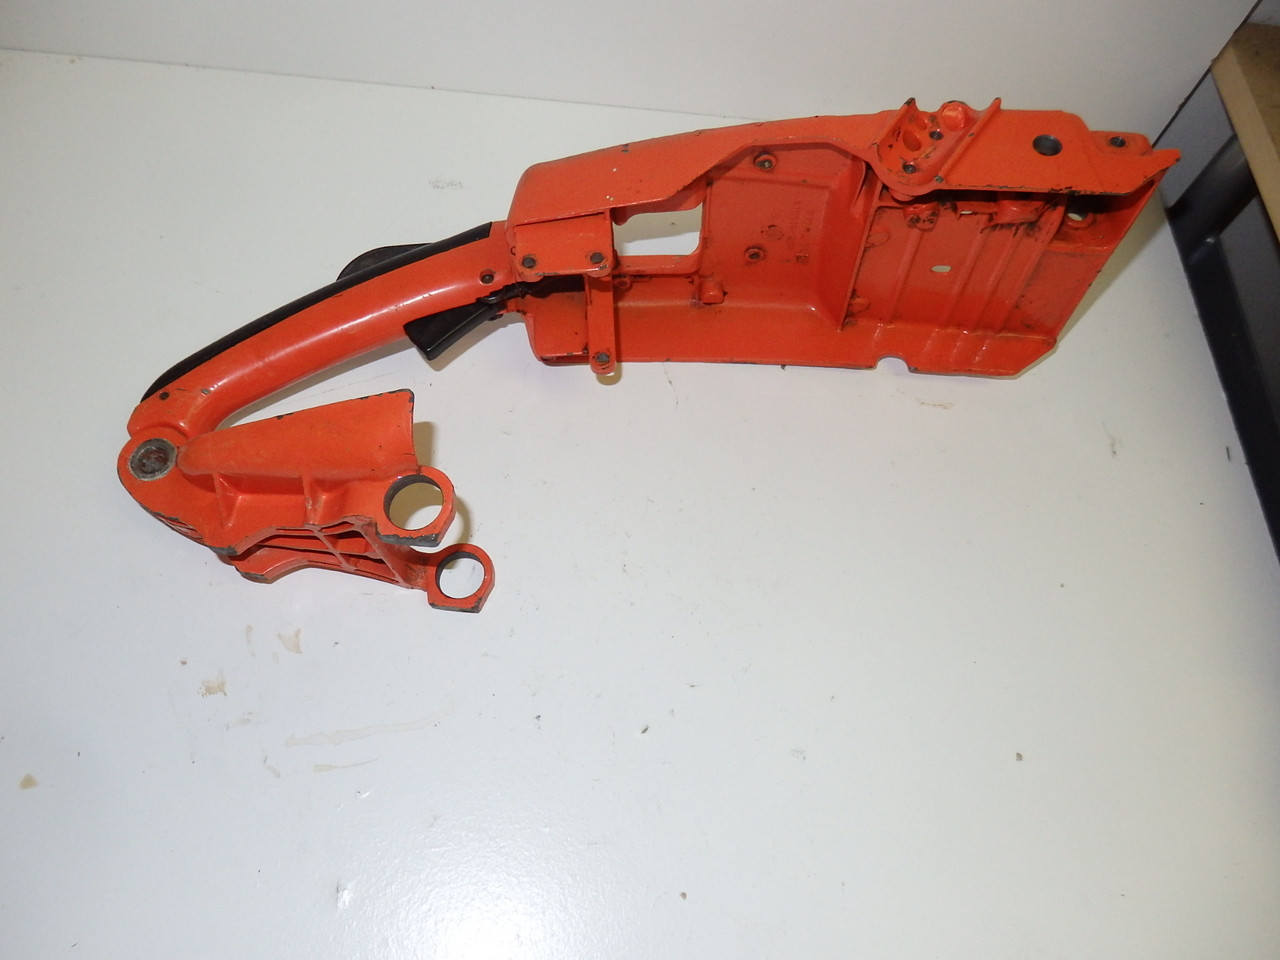 NEW OEM STIHL Chainsaw Rubber Handle Grip Cover Molding 031AV 031 AV O31 O31AV